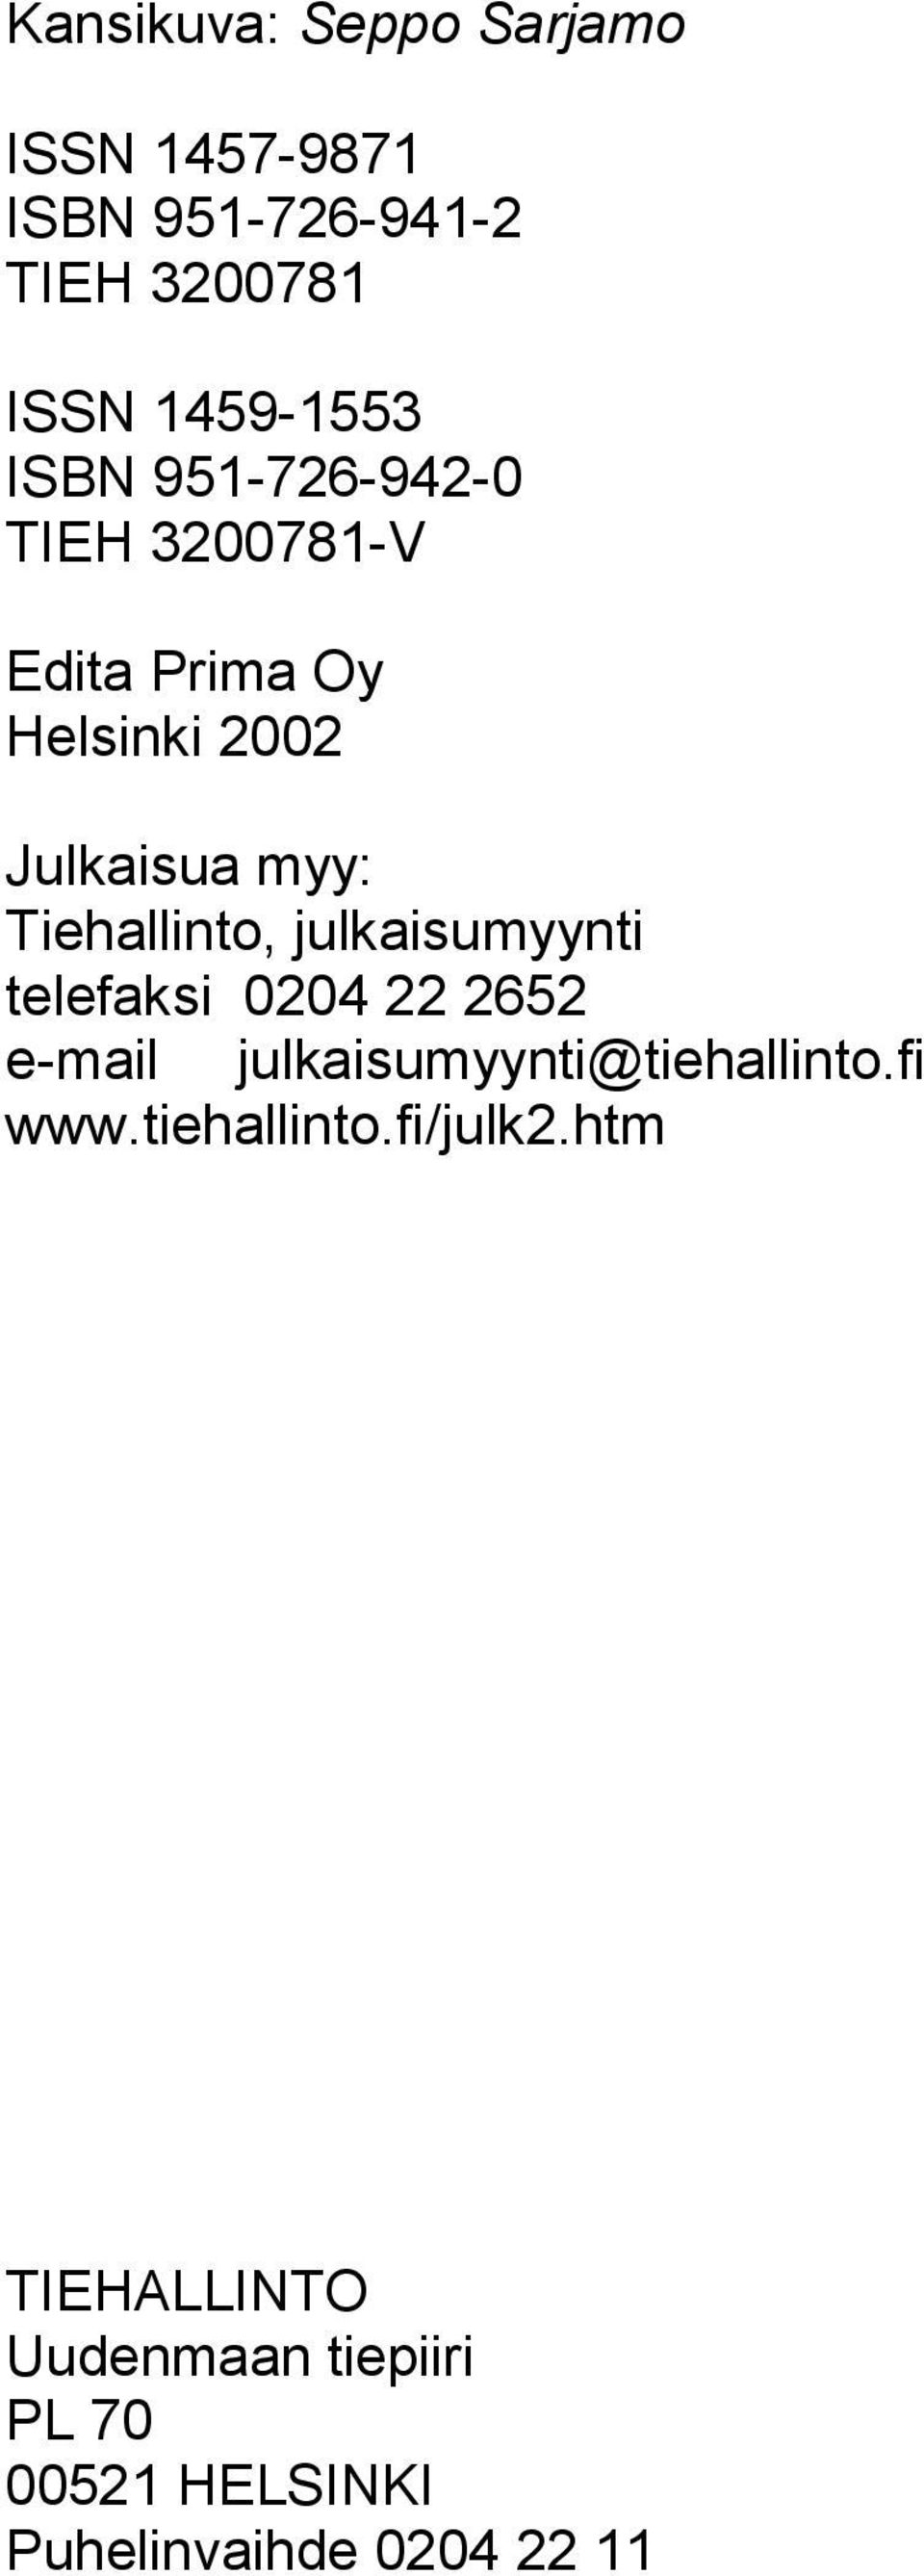 Tiehallinto, julkaisumyynti telefaksi 0204 22 2652 e-mail julkaisumyynti@tiehallinto.